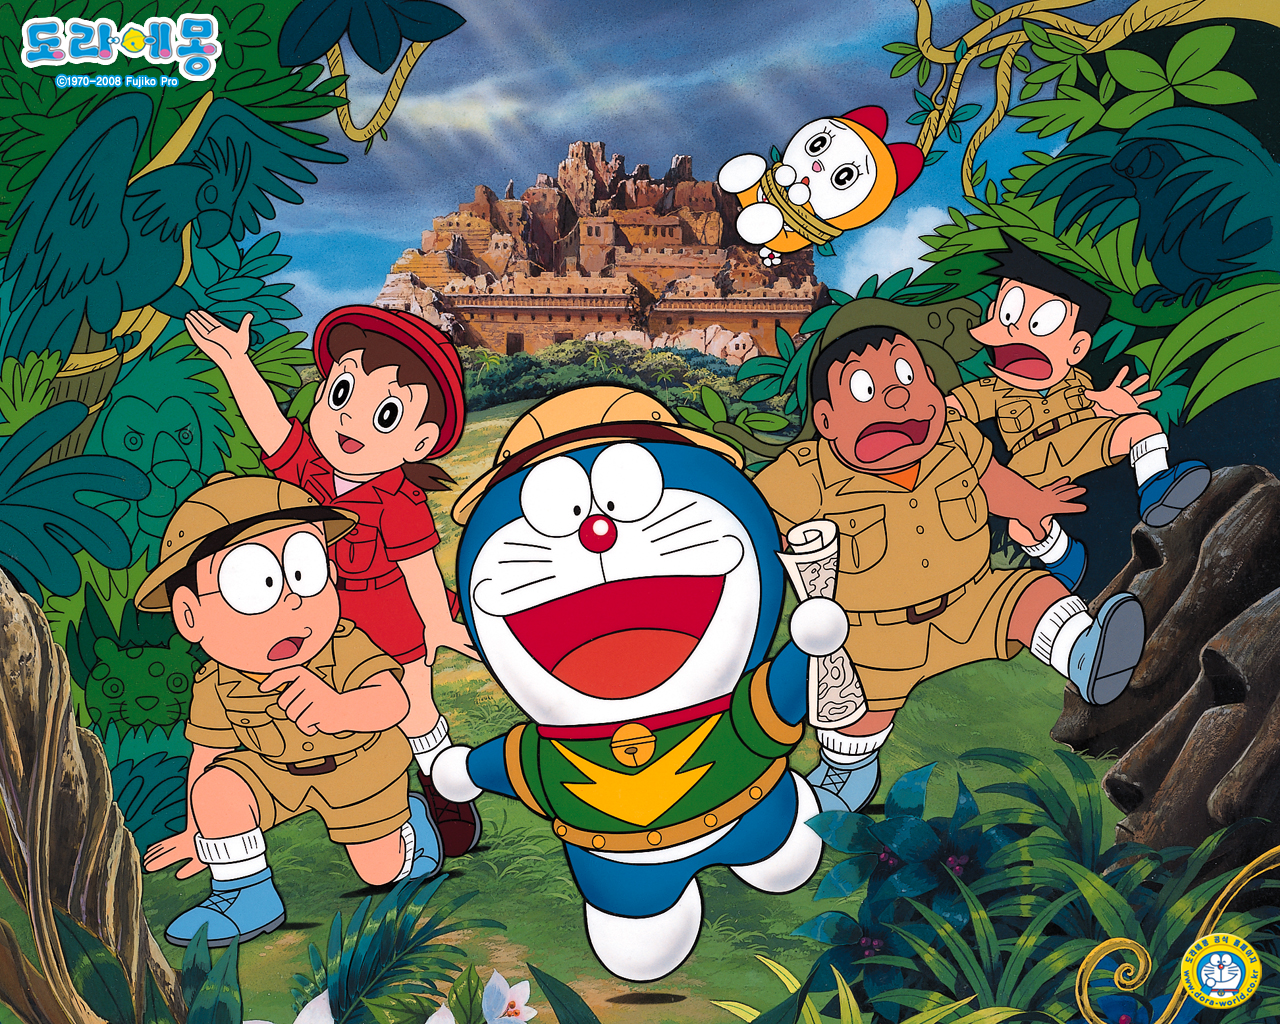 Doraemon hình ảnh - Hãy khám phá thế giới li kỳ của Doraemon với những hình ảnh đầy màu sắc và đáng yêu. Tận hưởng khoảnh khắc giai điệu của chú mèo máy này trong những tập phim giải trí thú vị cùng bạn bè và gia đình của bạn.